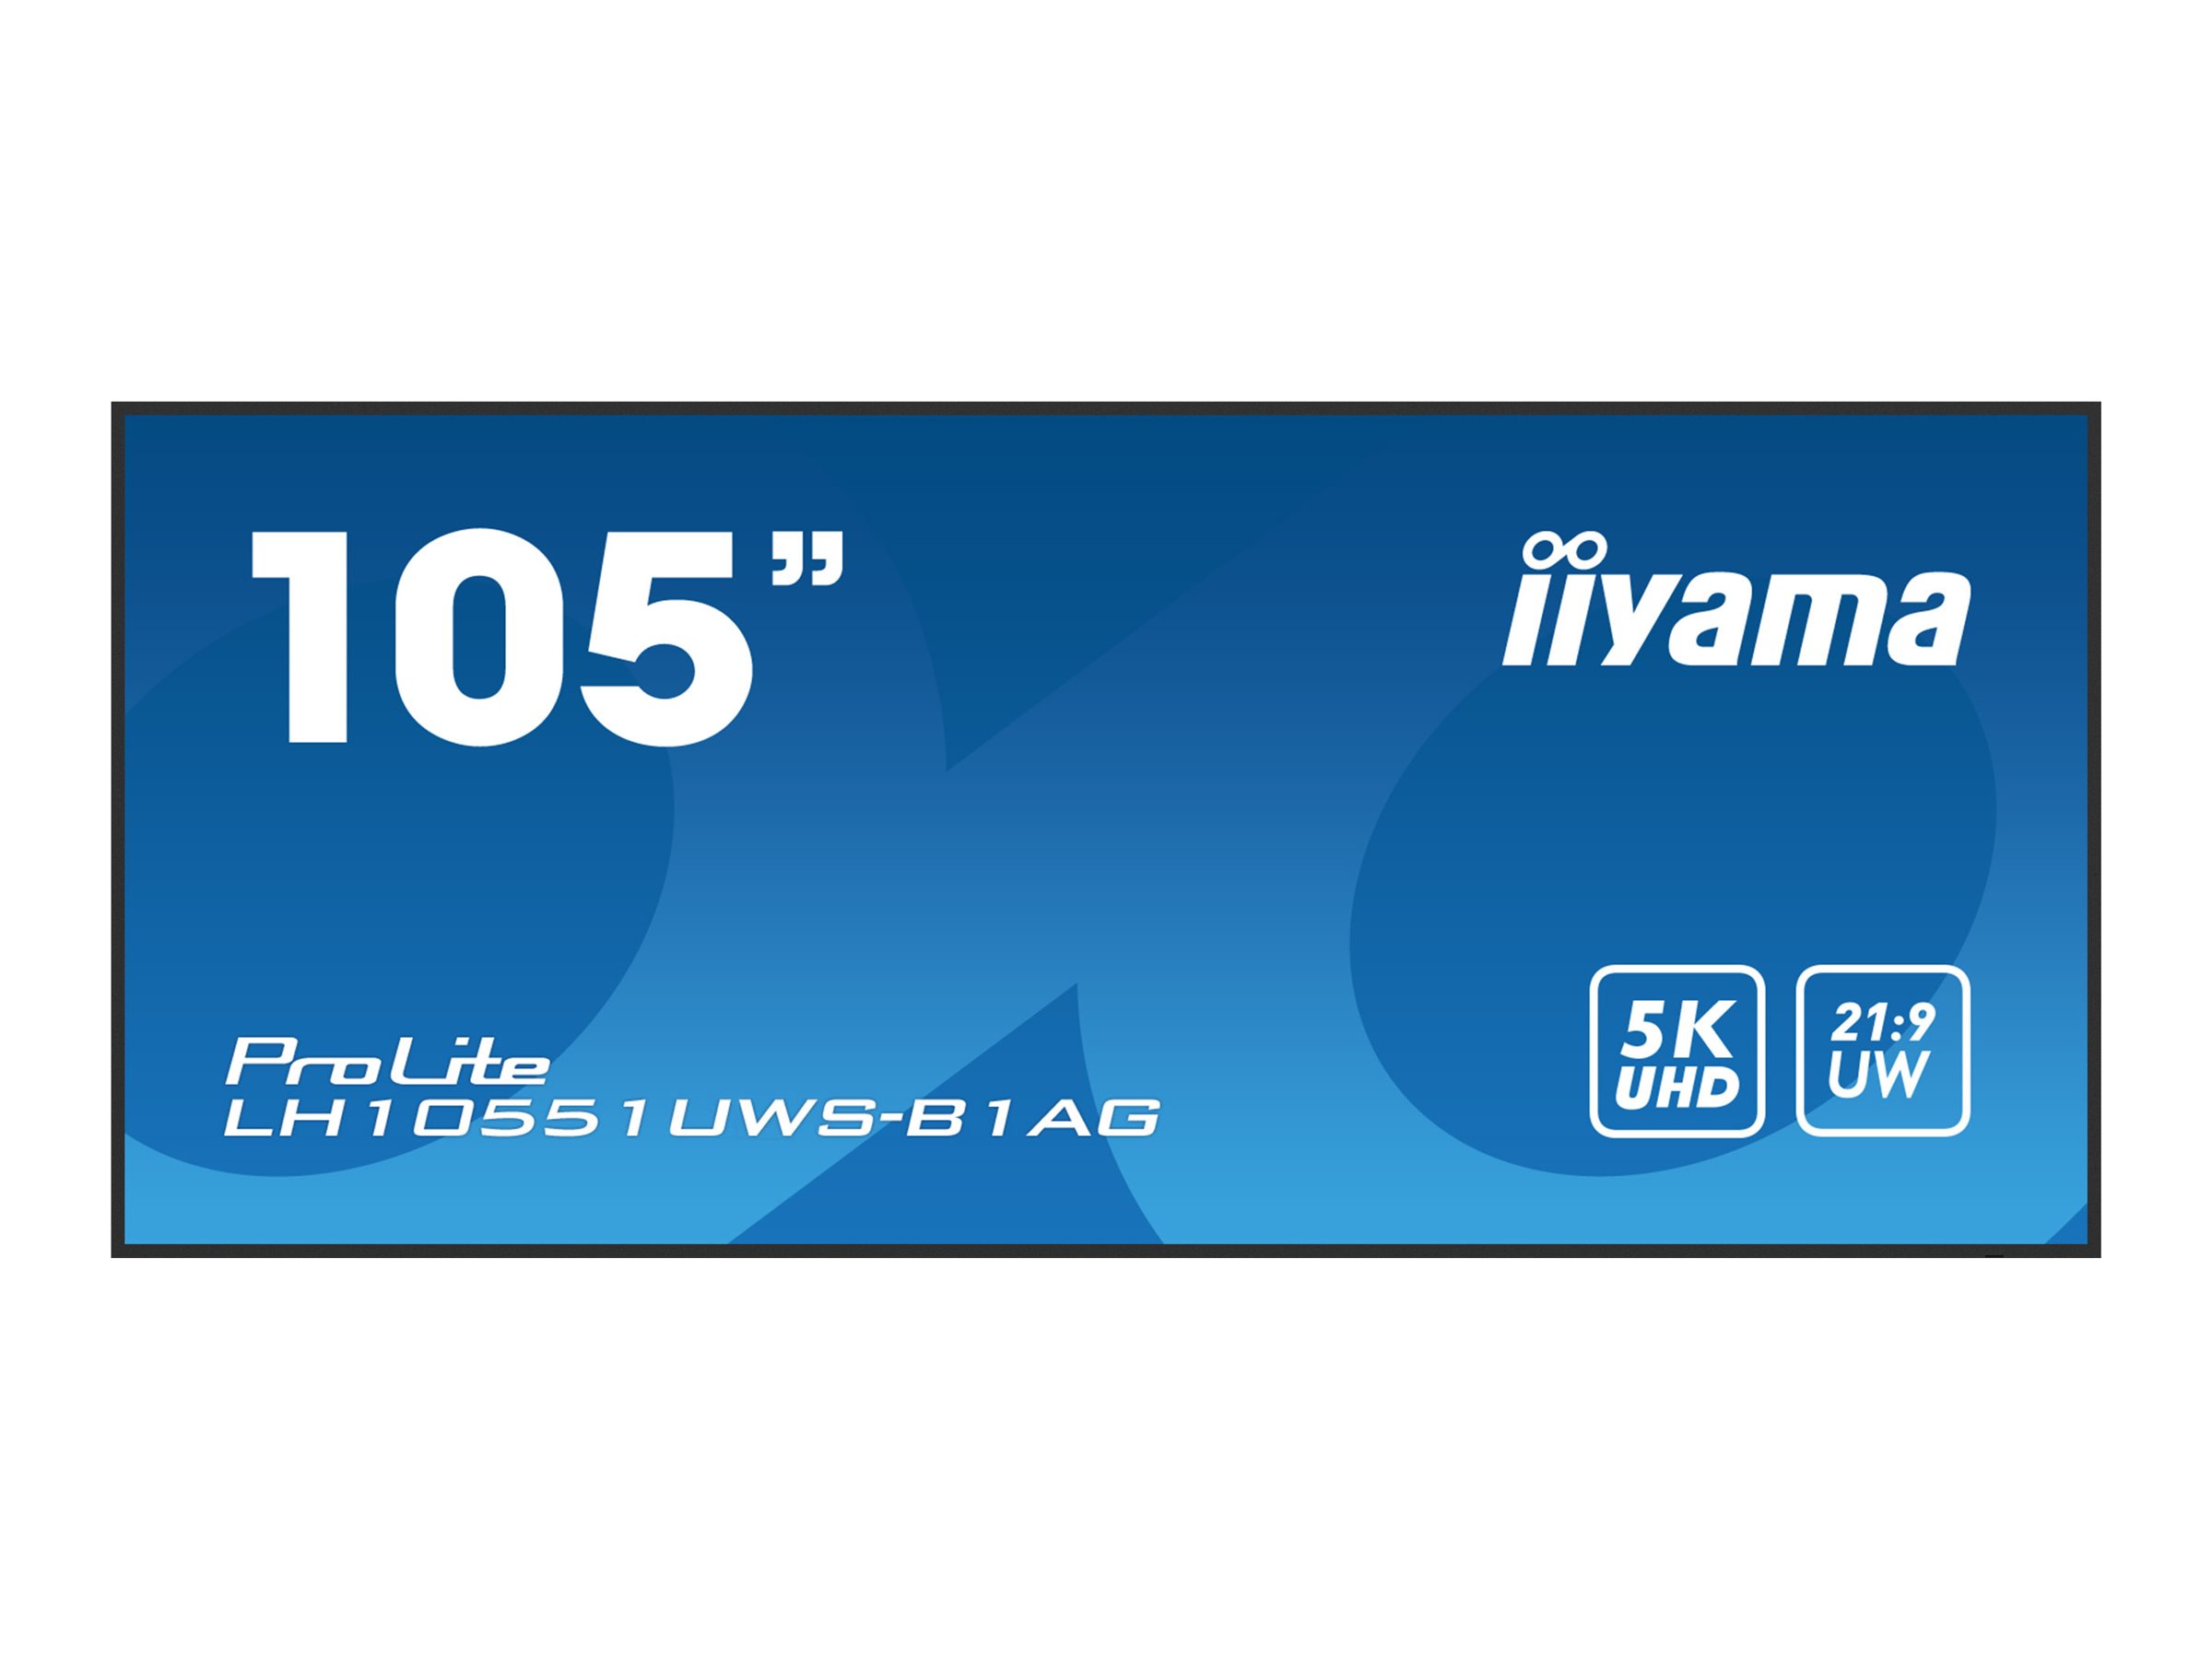 iiyama ProLite LH10551UWS-B1AG - Classe de diagonale 105" (104.7" visualisable) écran LCD rétro-éclairé par LED - signalisation numérique - 5K UHD (2160p) 5120 x 2160 - noir - LH10551UWS-B1AG - Écrans de signalisation numérique